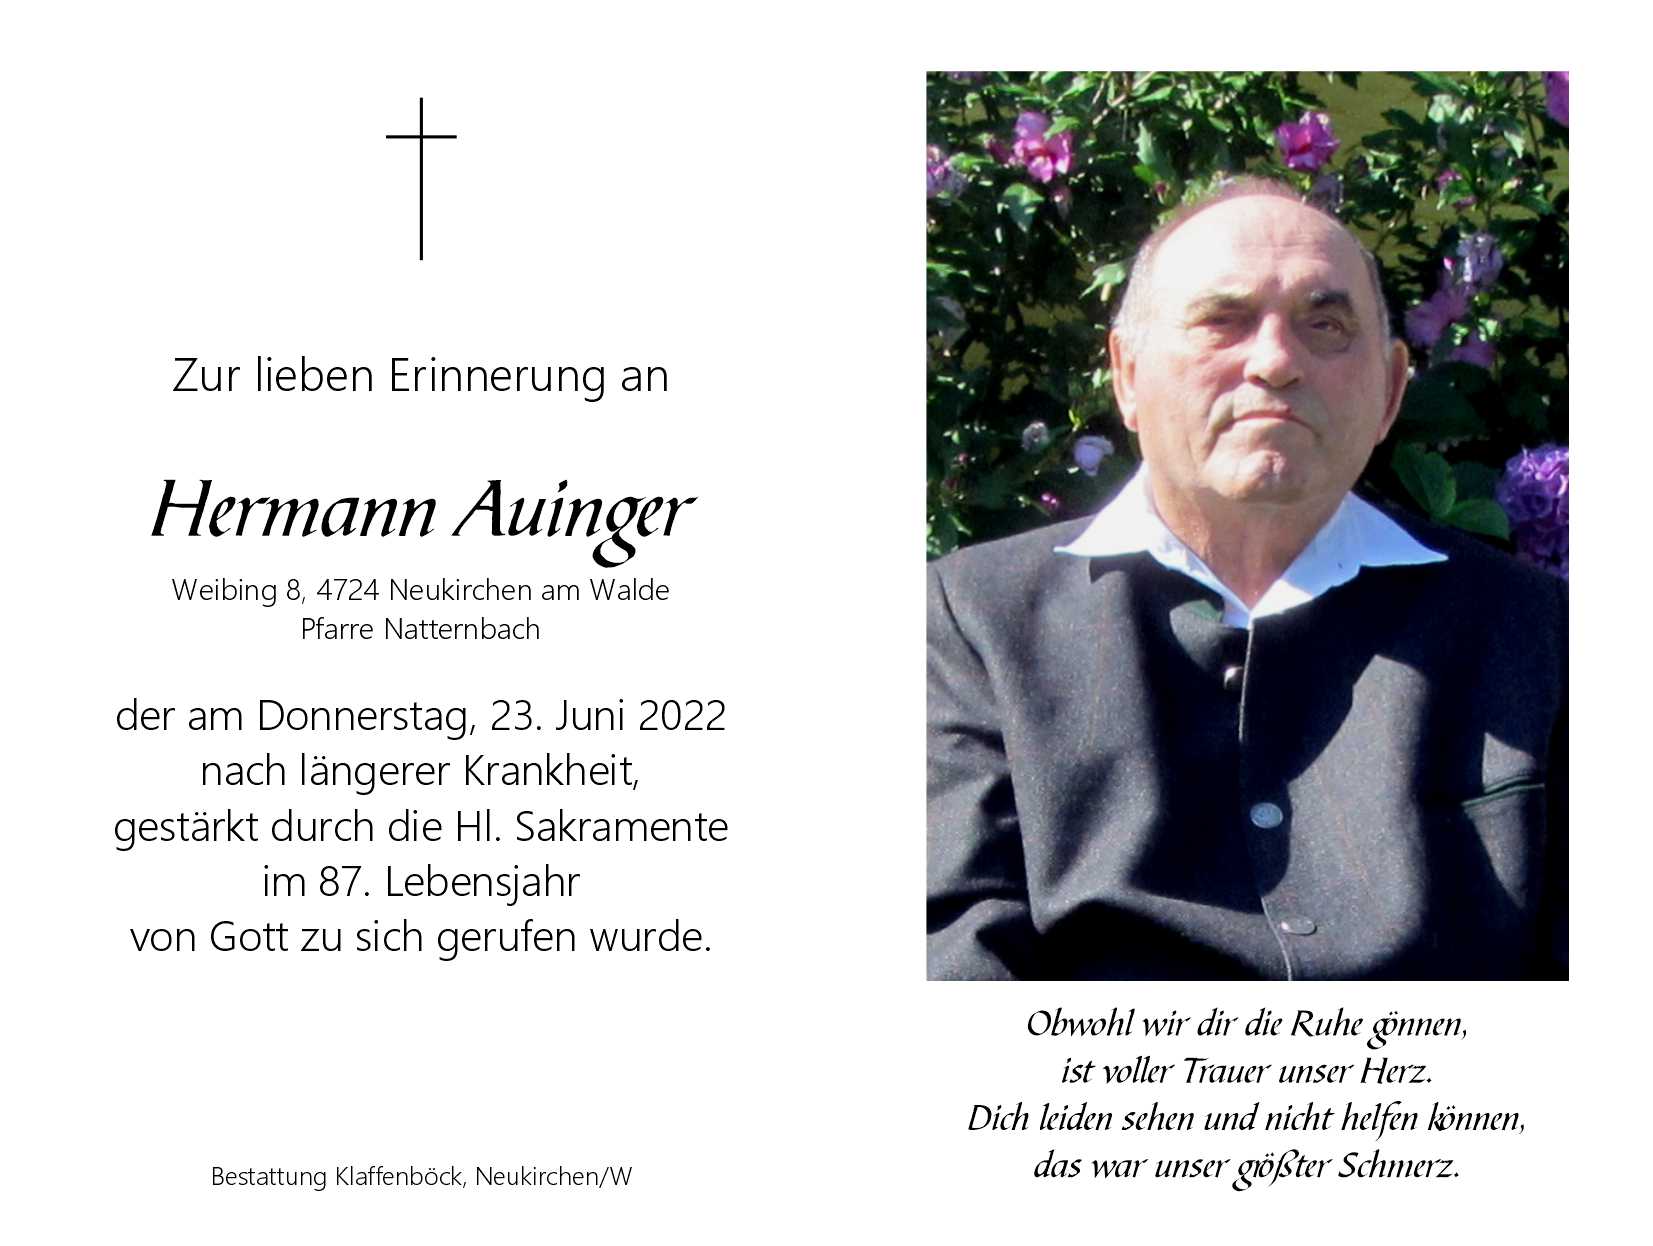 Hermann  Auinger